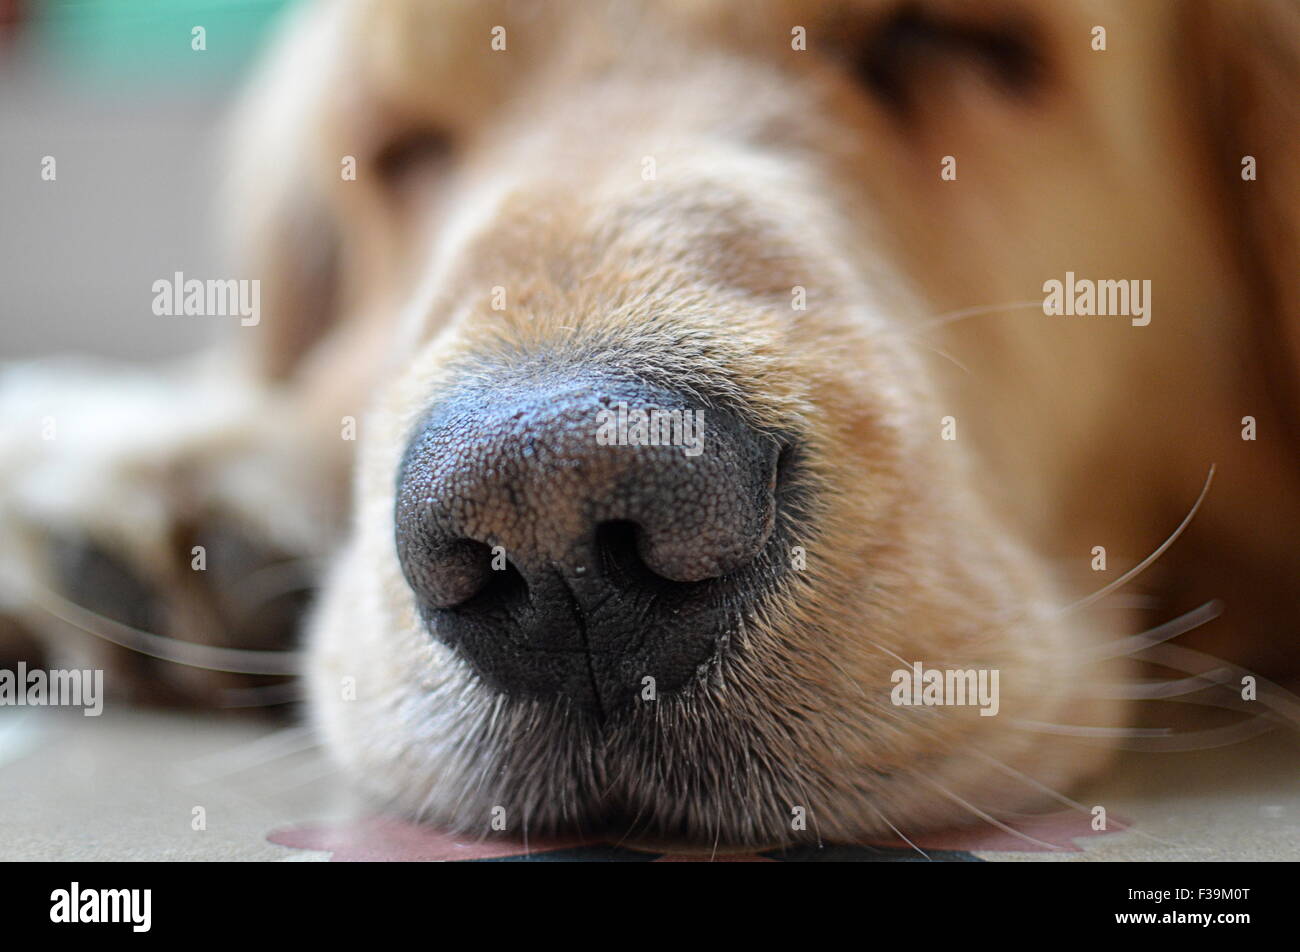 Close-up portrait of a golden retriever dog's snout Stock Photo